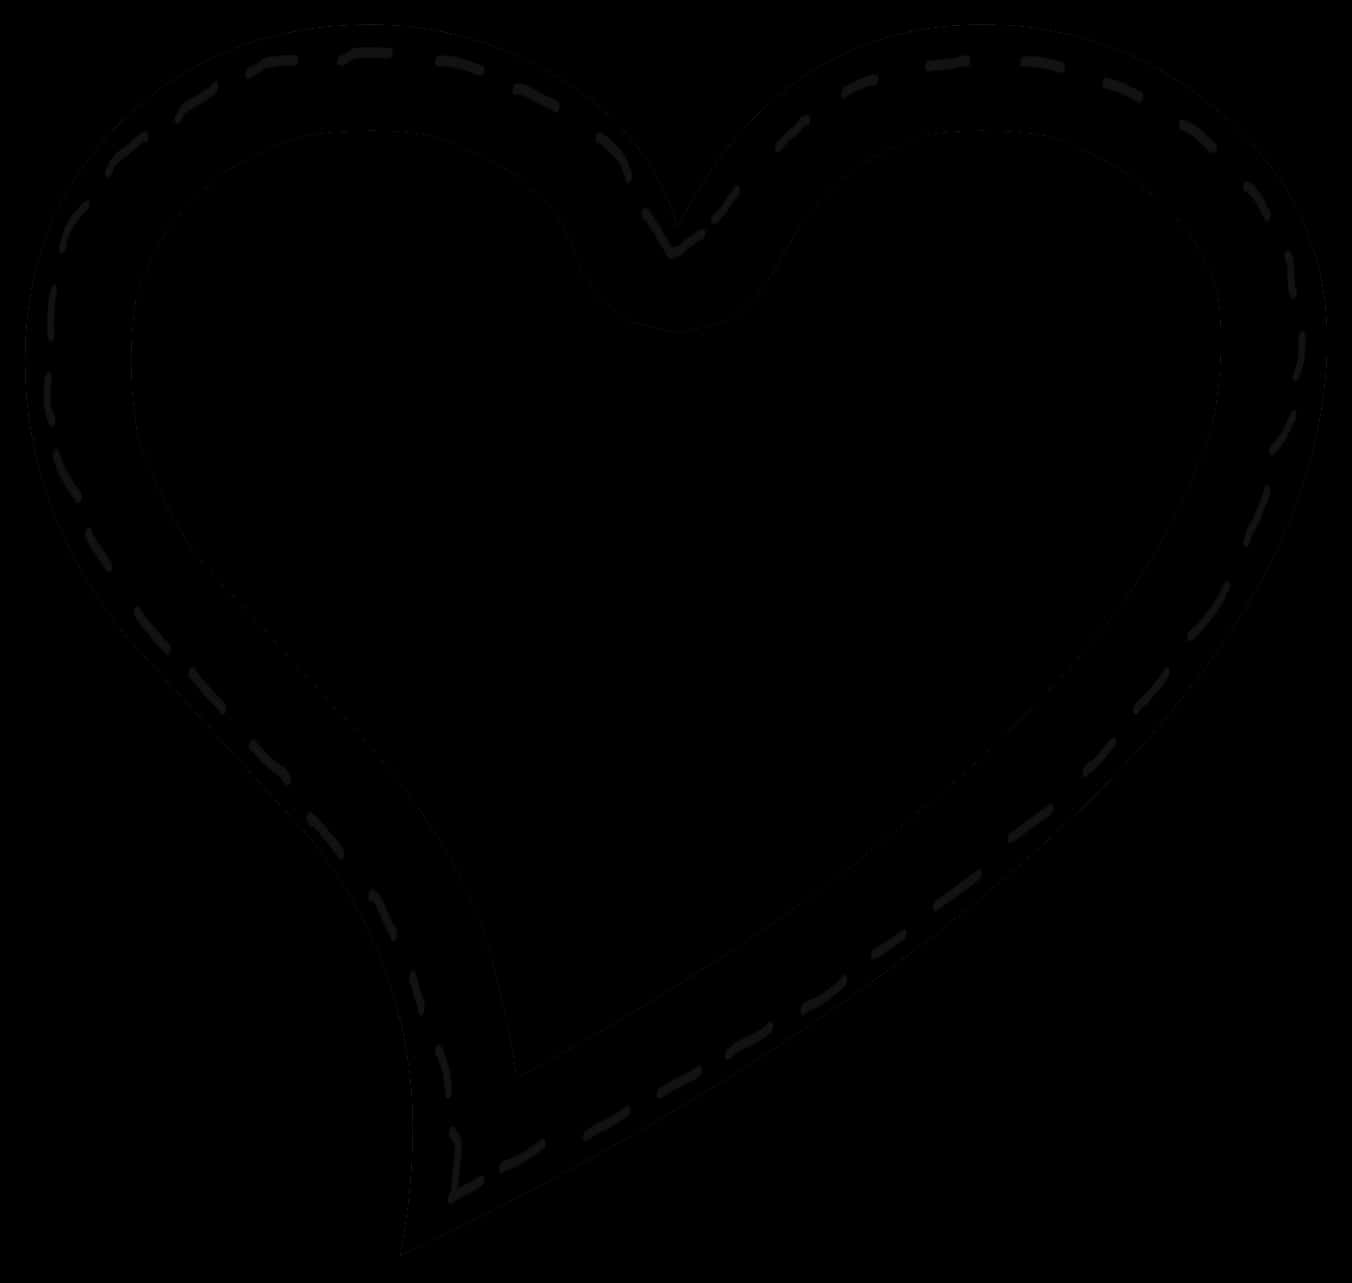 Dashed Heart Outline Black Background PNG